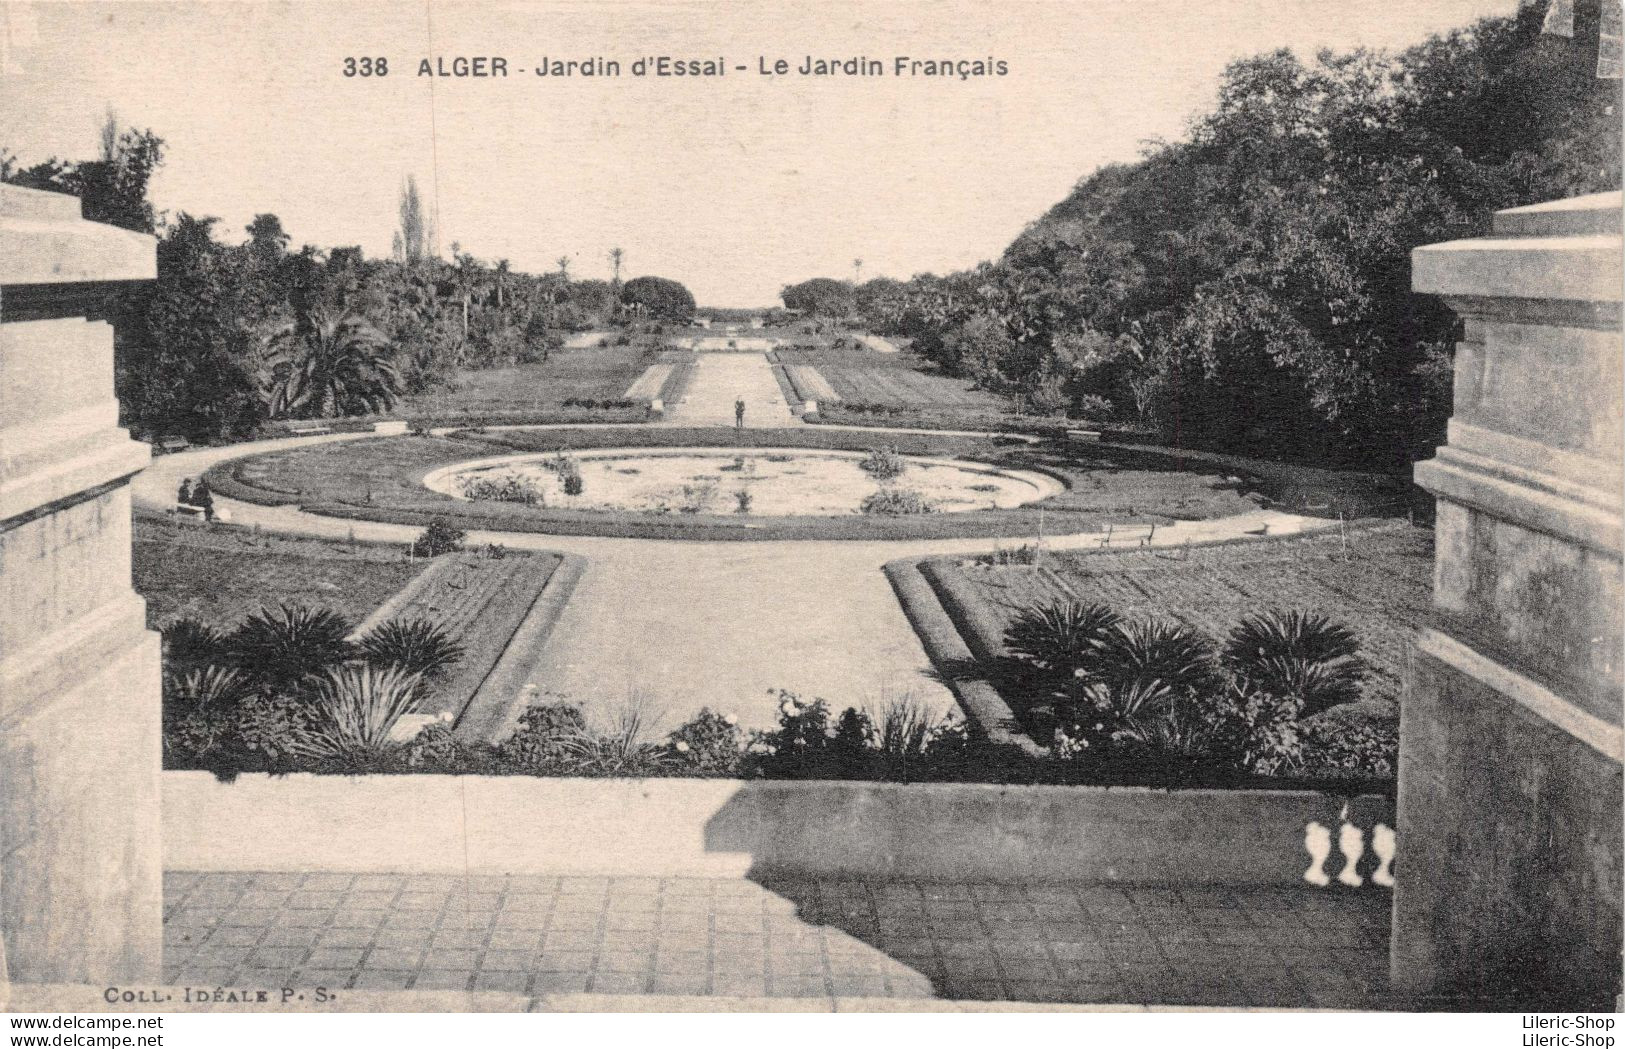 Alger  - Le Jardin d'Essai - Lot de 8 cpa